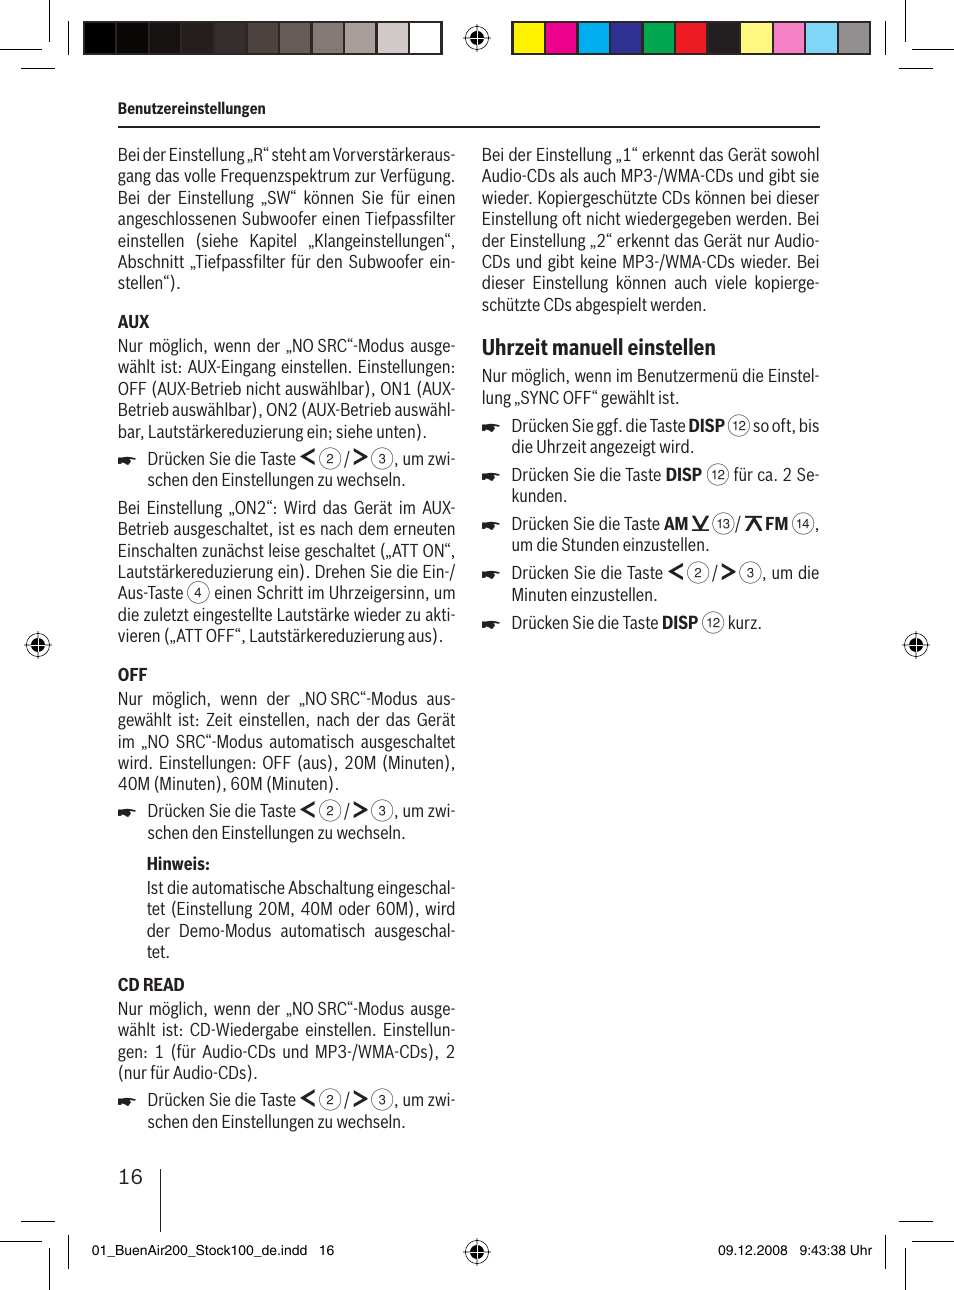 Uhrzeit manuell einstellen | Blaupunkt BUENOS AIRES 200 7 649 020 110 User  Manual | Page 16 / 140 | Original mode